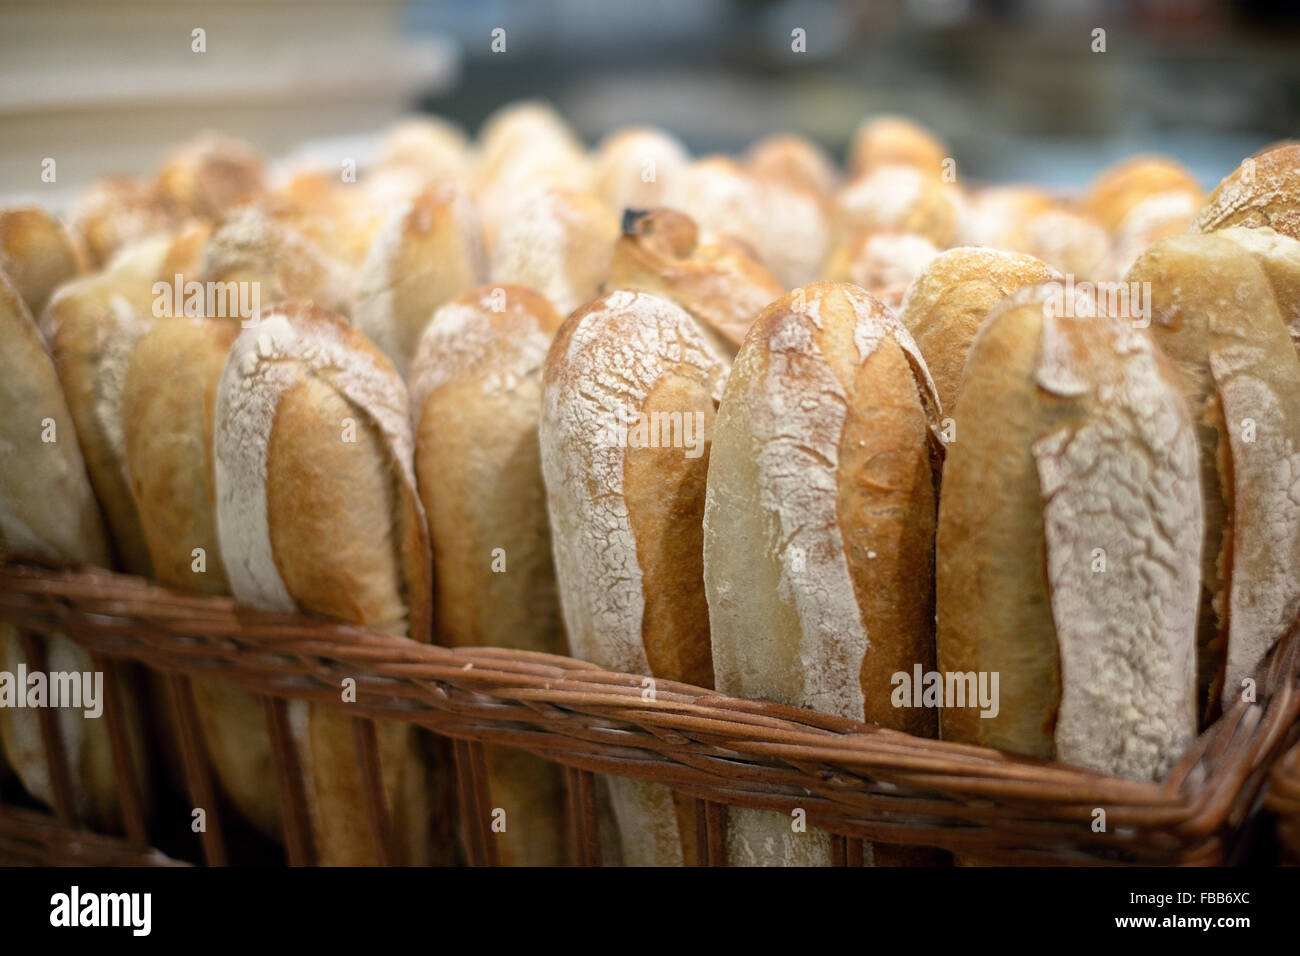 Vue rapprochée d'un panier plein de pain fraîchement cuit au four Banque D'Images